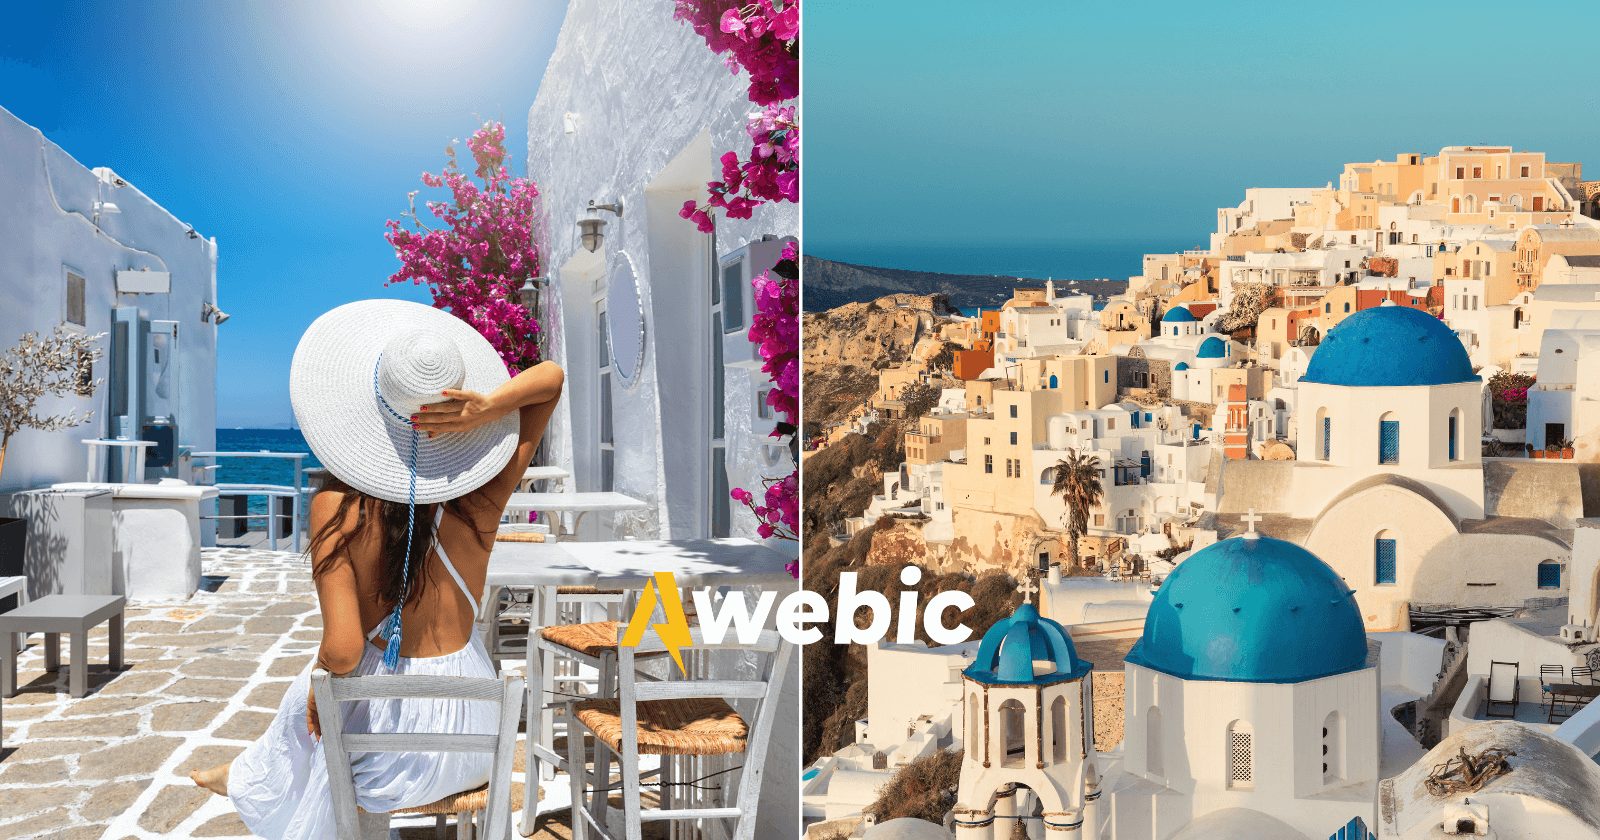 Programe sua viagem para a Grécia: como ir e quanto custará